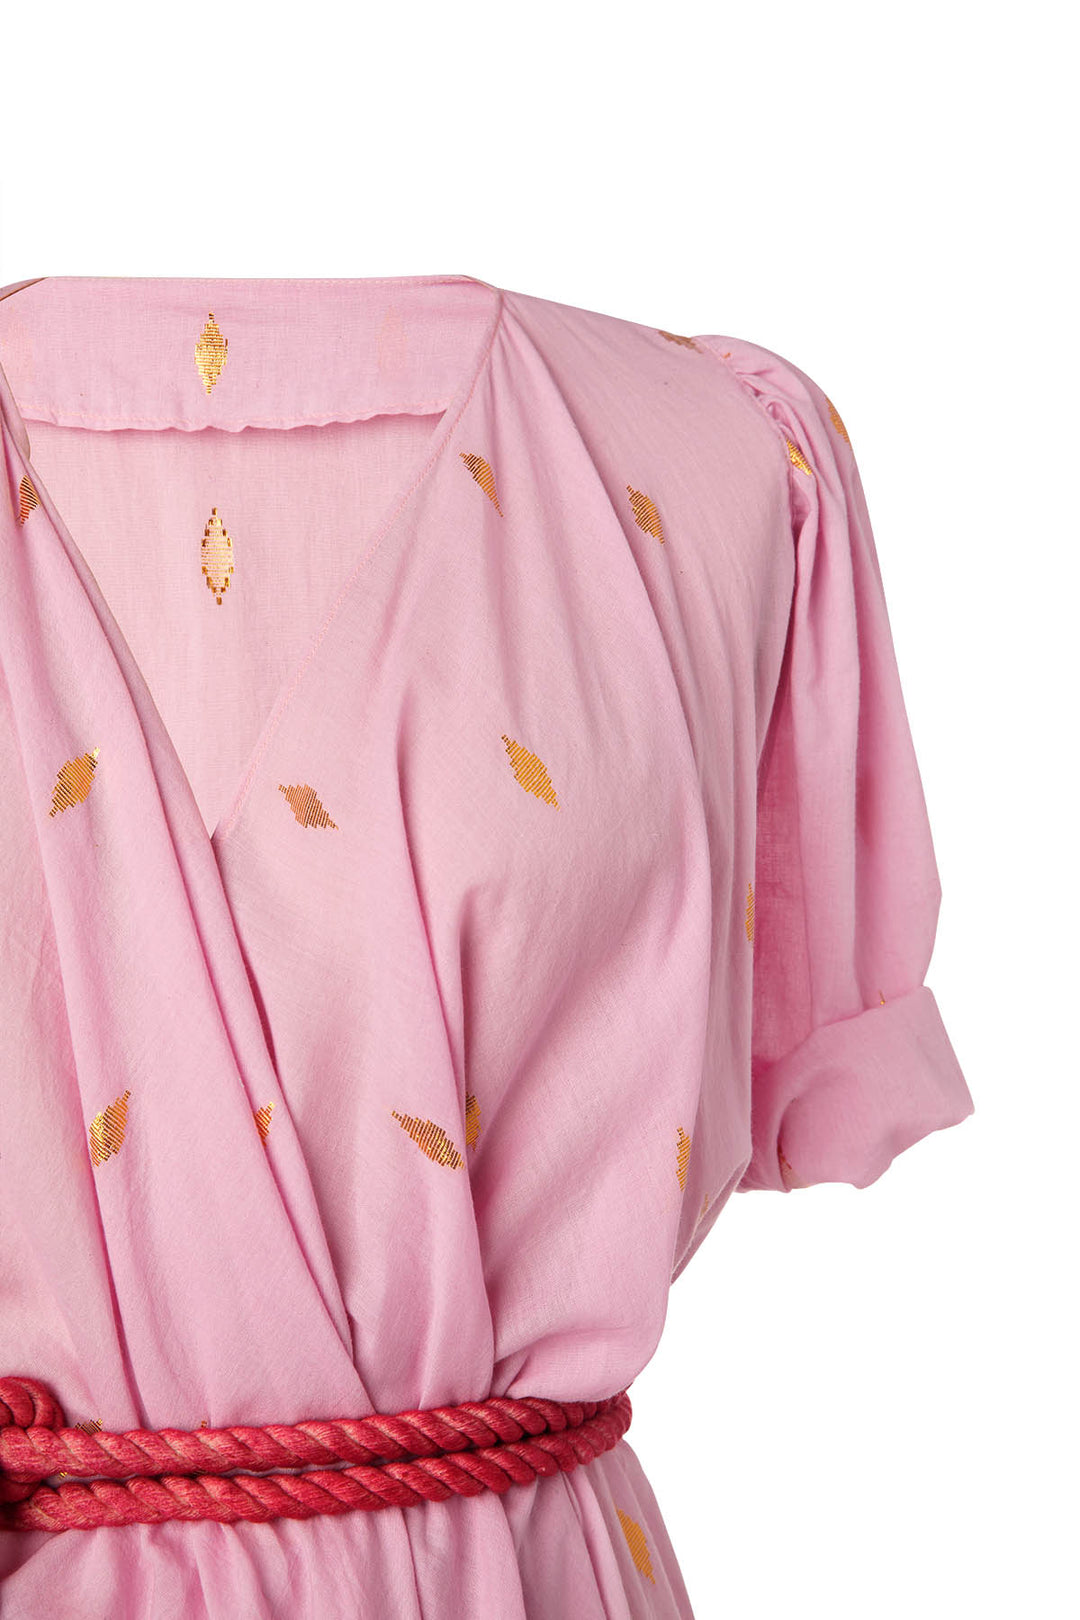 Persephone Pink Jamdani Dress